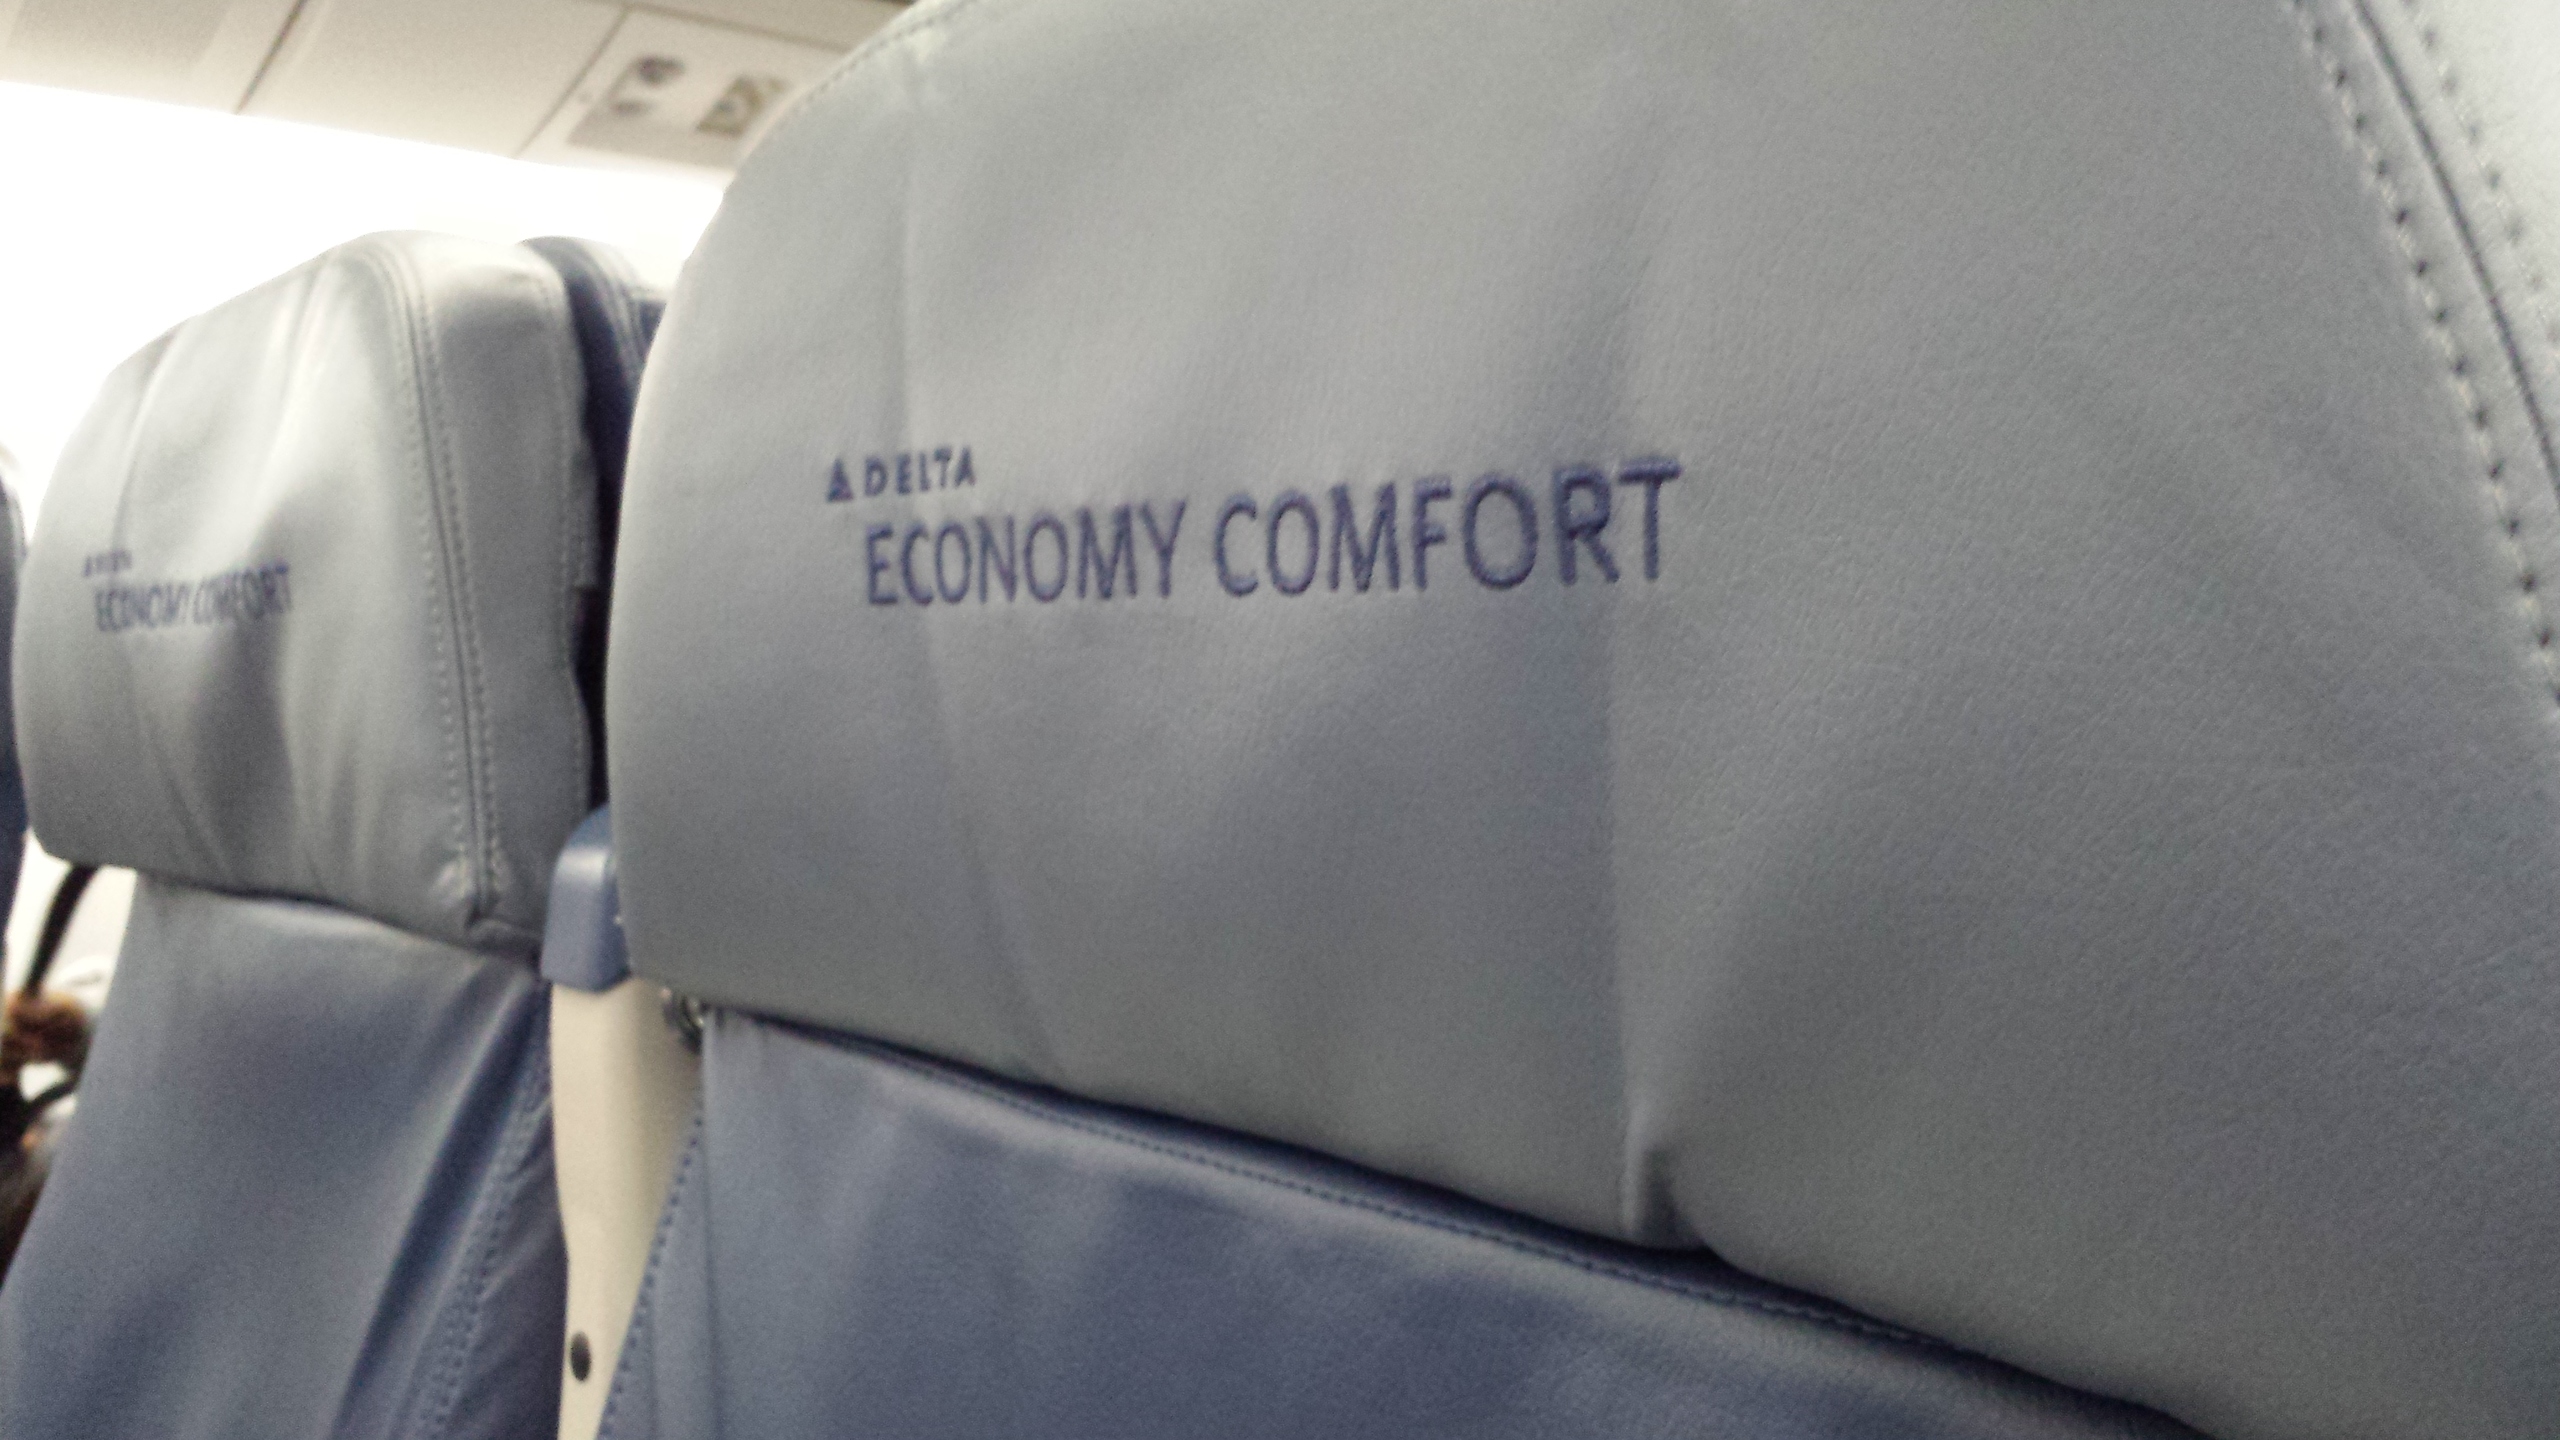 Economy Comfort headrest.